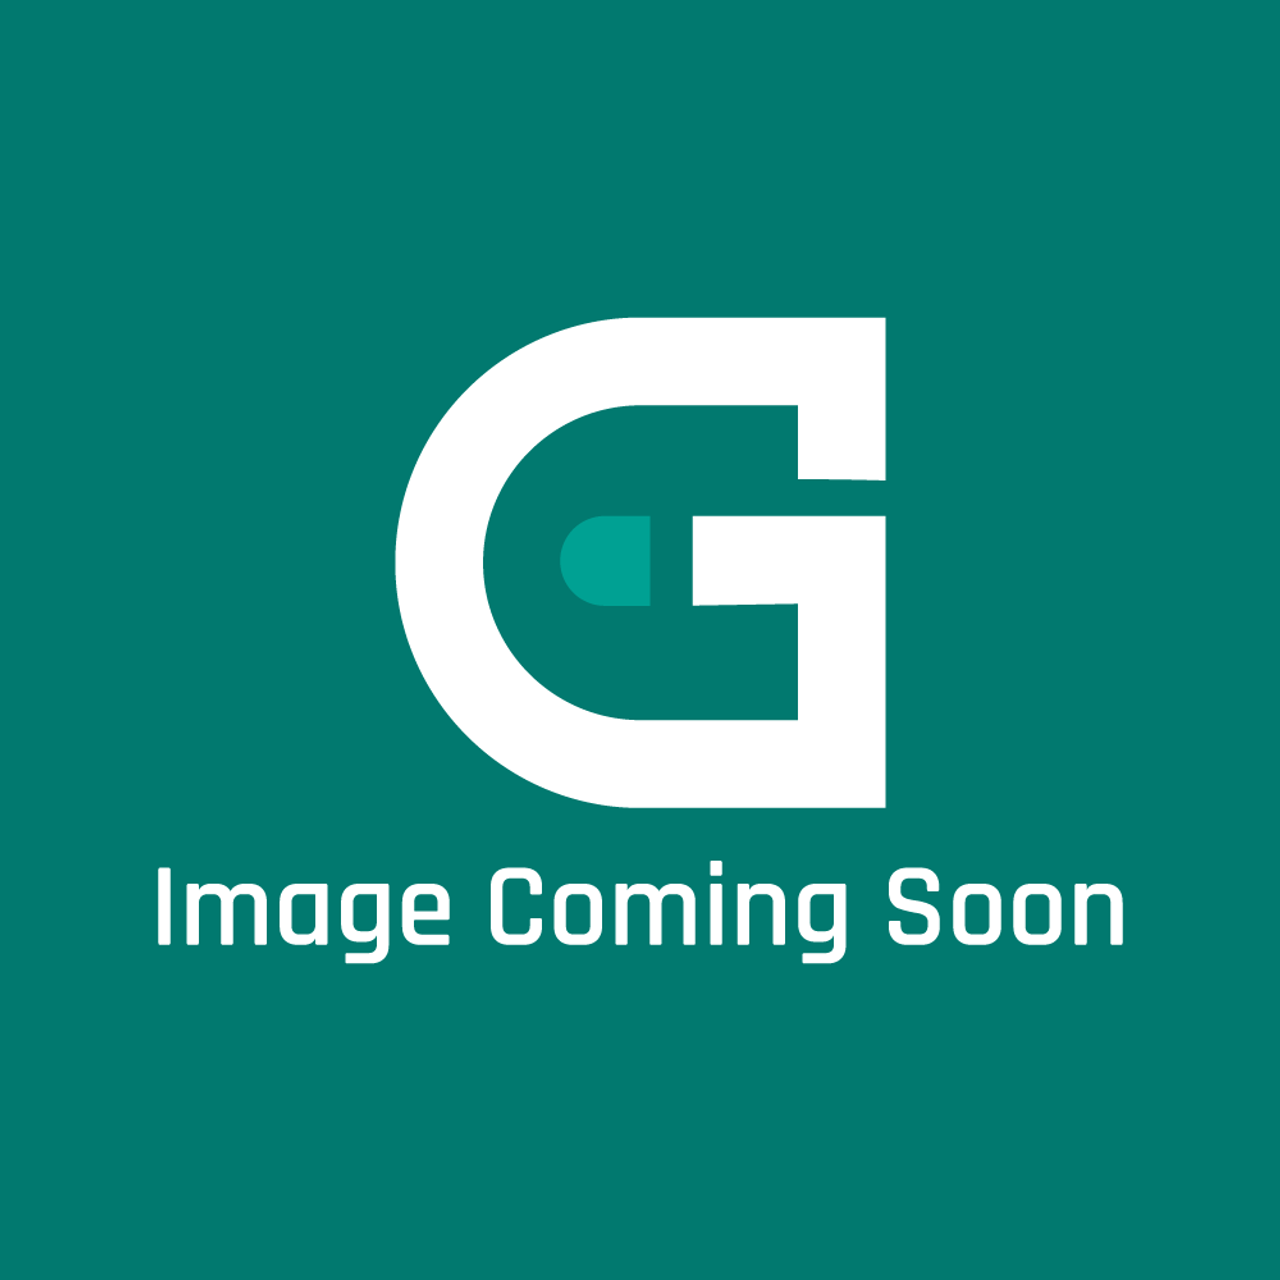 AGA Marvel A4142 - Rtning Ring Main(Sim/Max) Dc6 - Image Coming Soon!